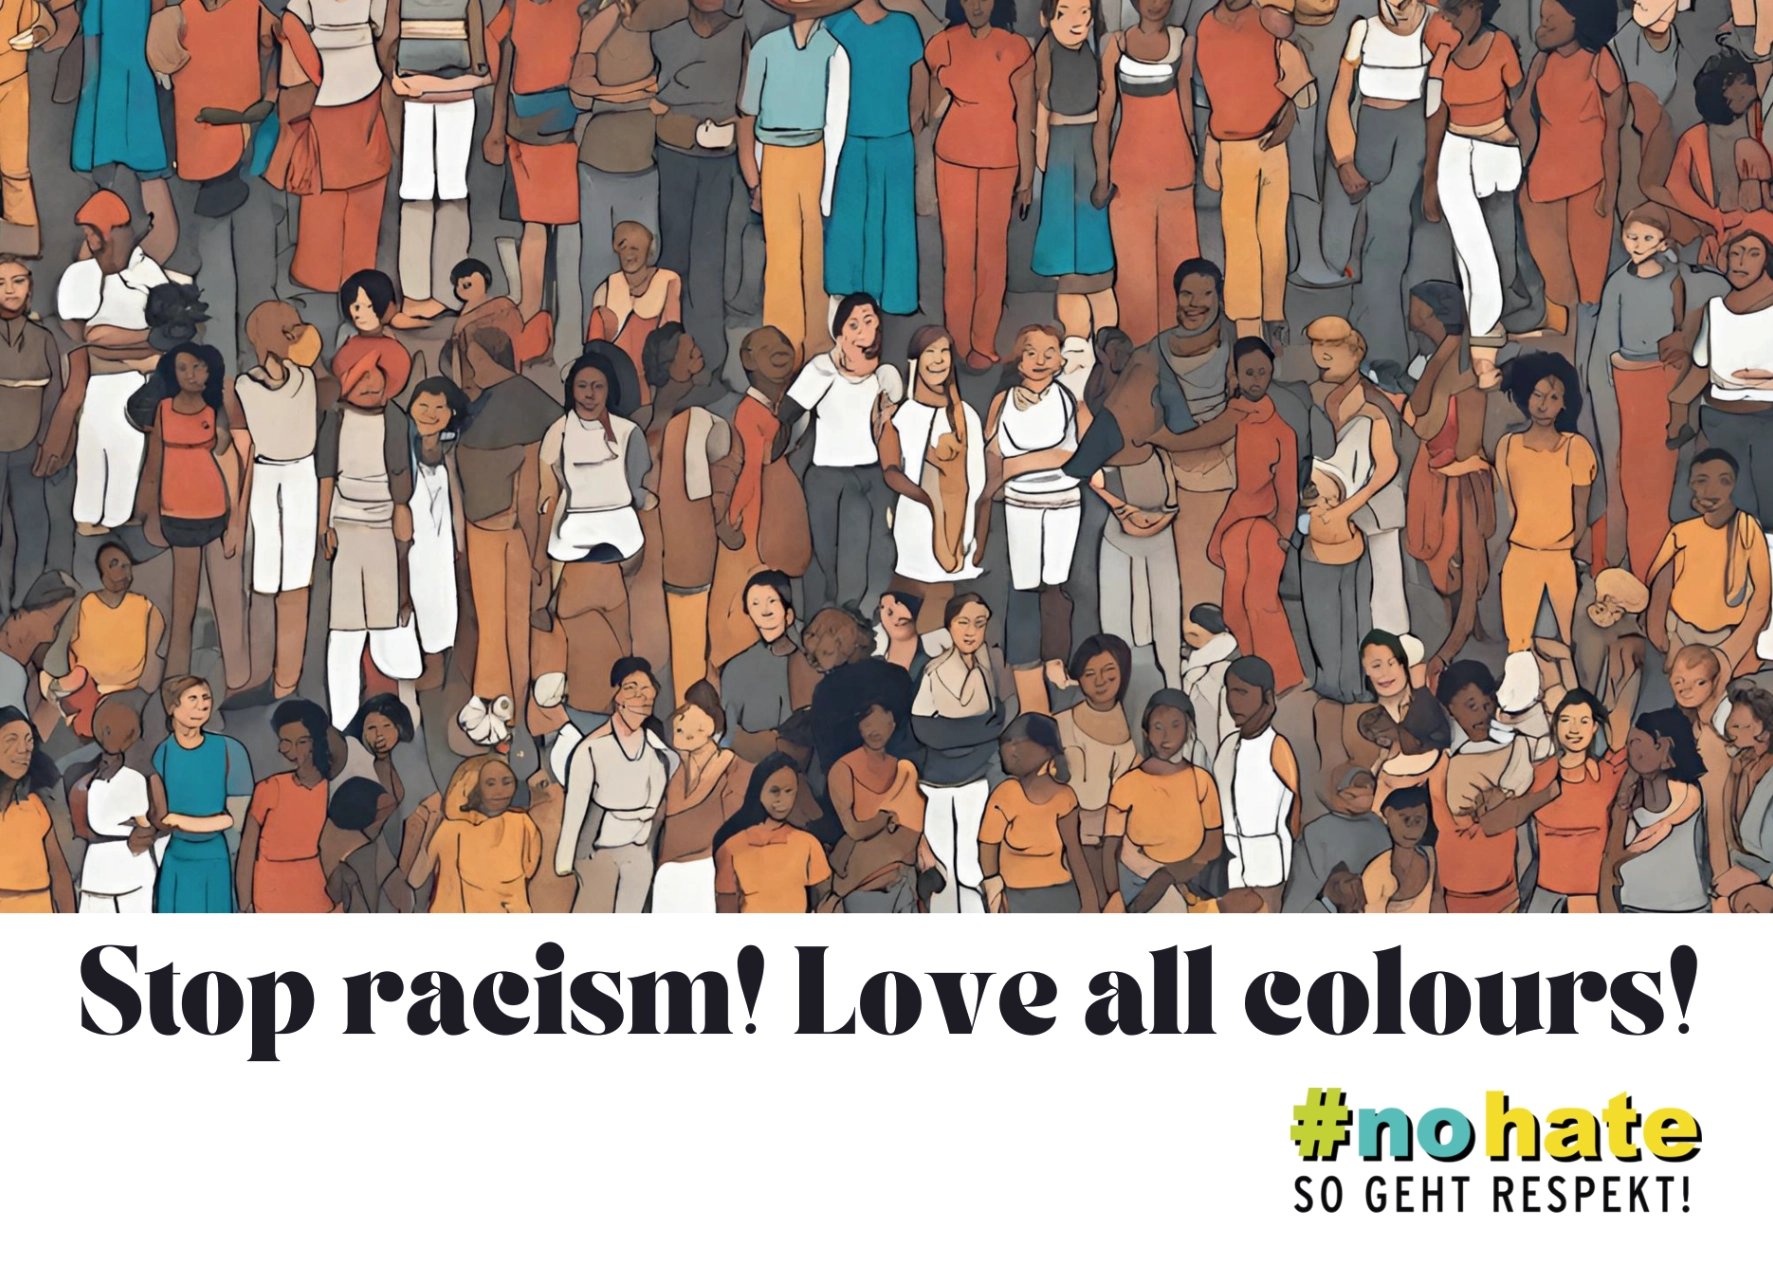 Postkarten- und Stickermotiv "Stop racism! Love all colours!"